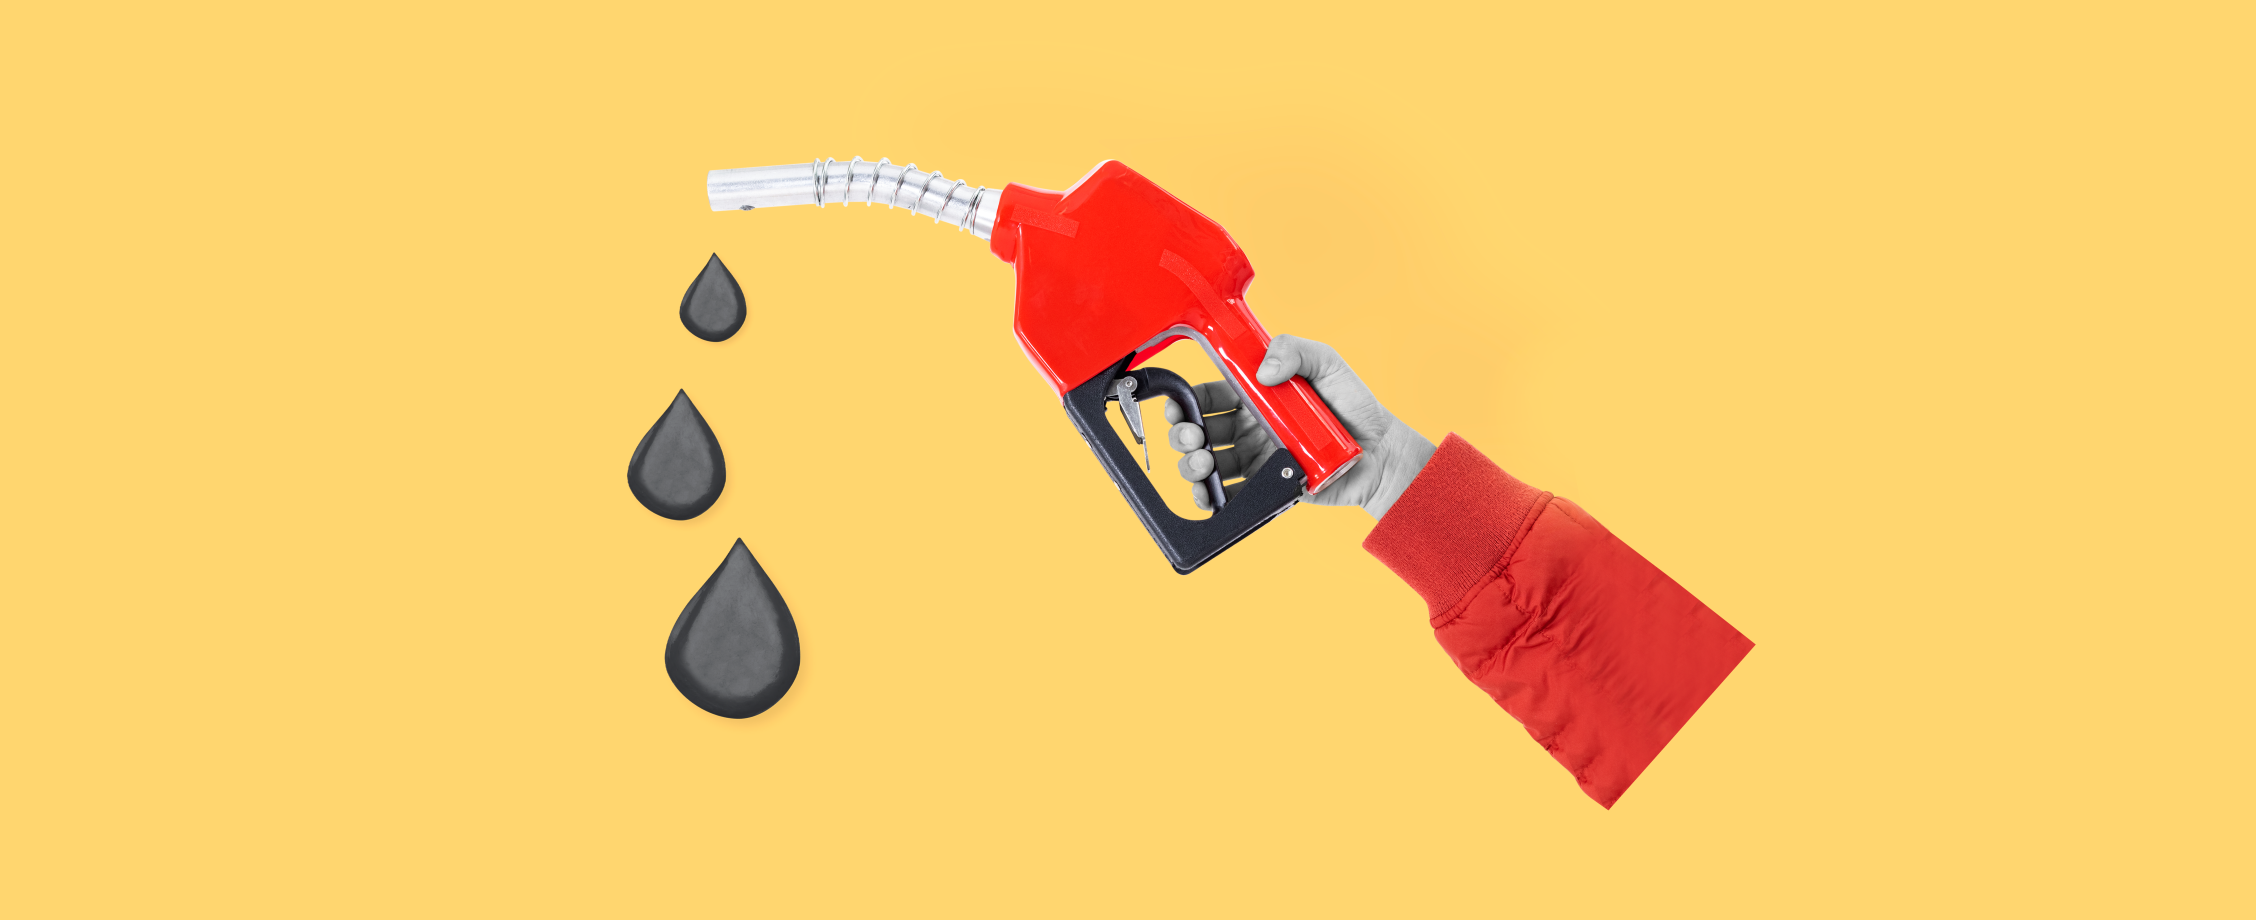 Бензин дорожает и исчезает: что происходит с ценами и дефицитом топлива в России